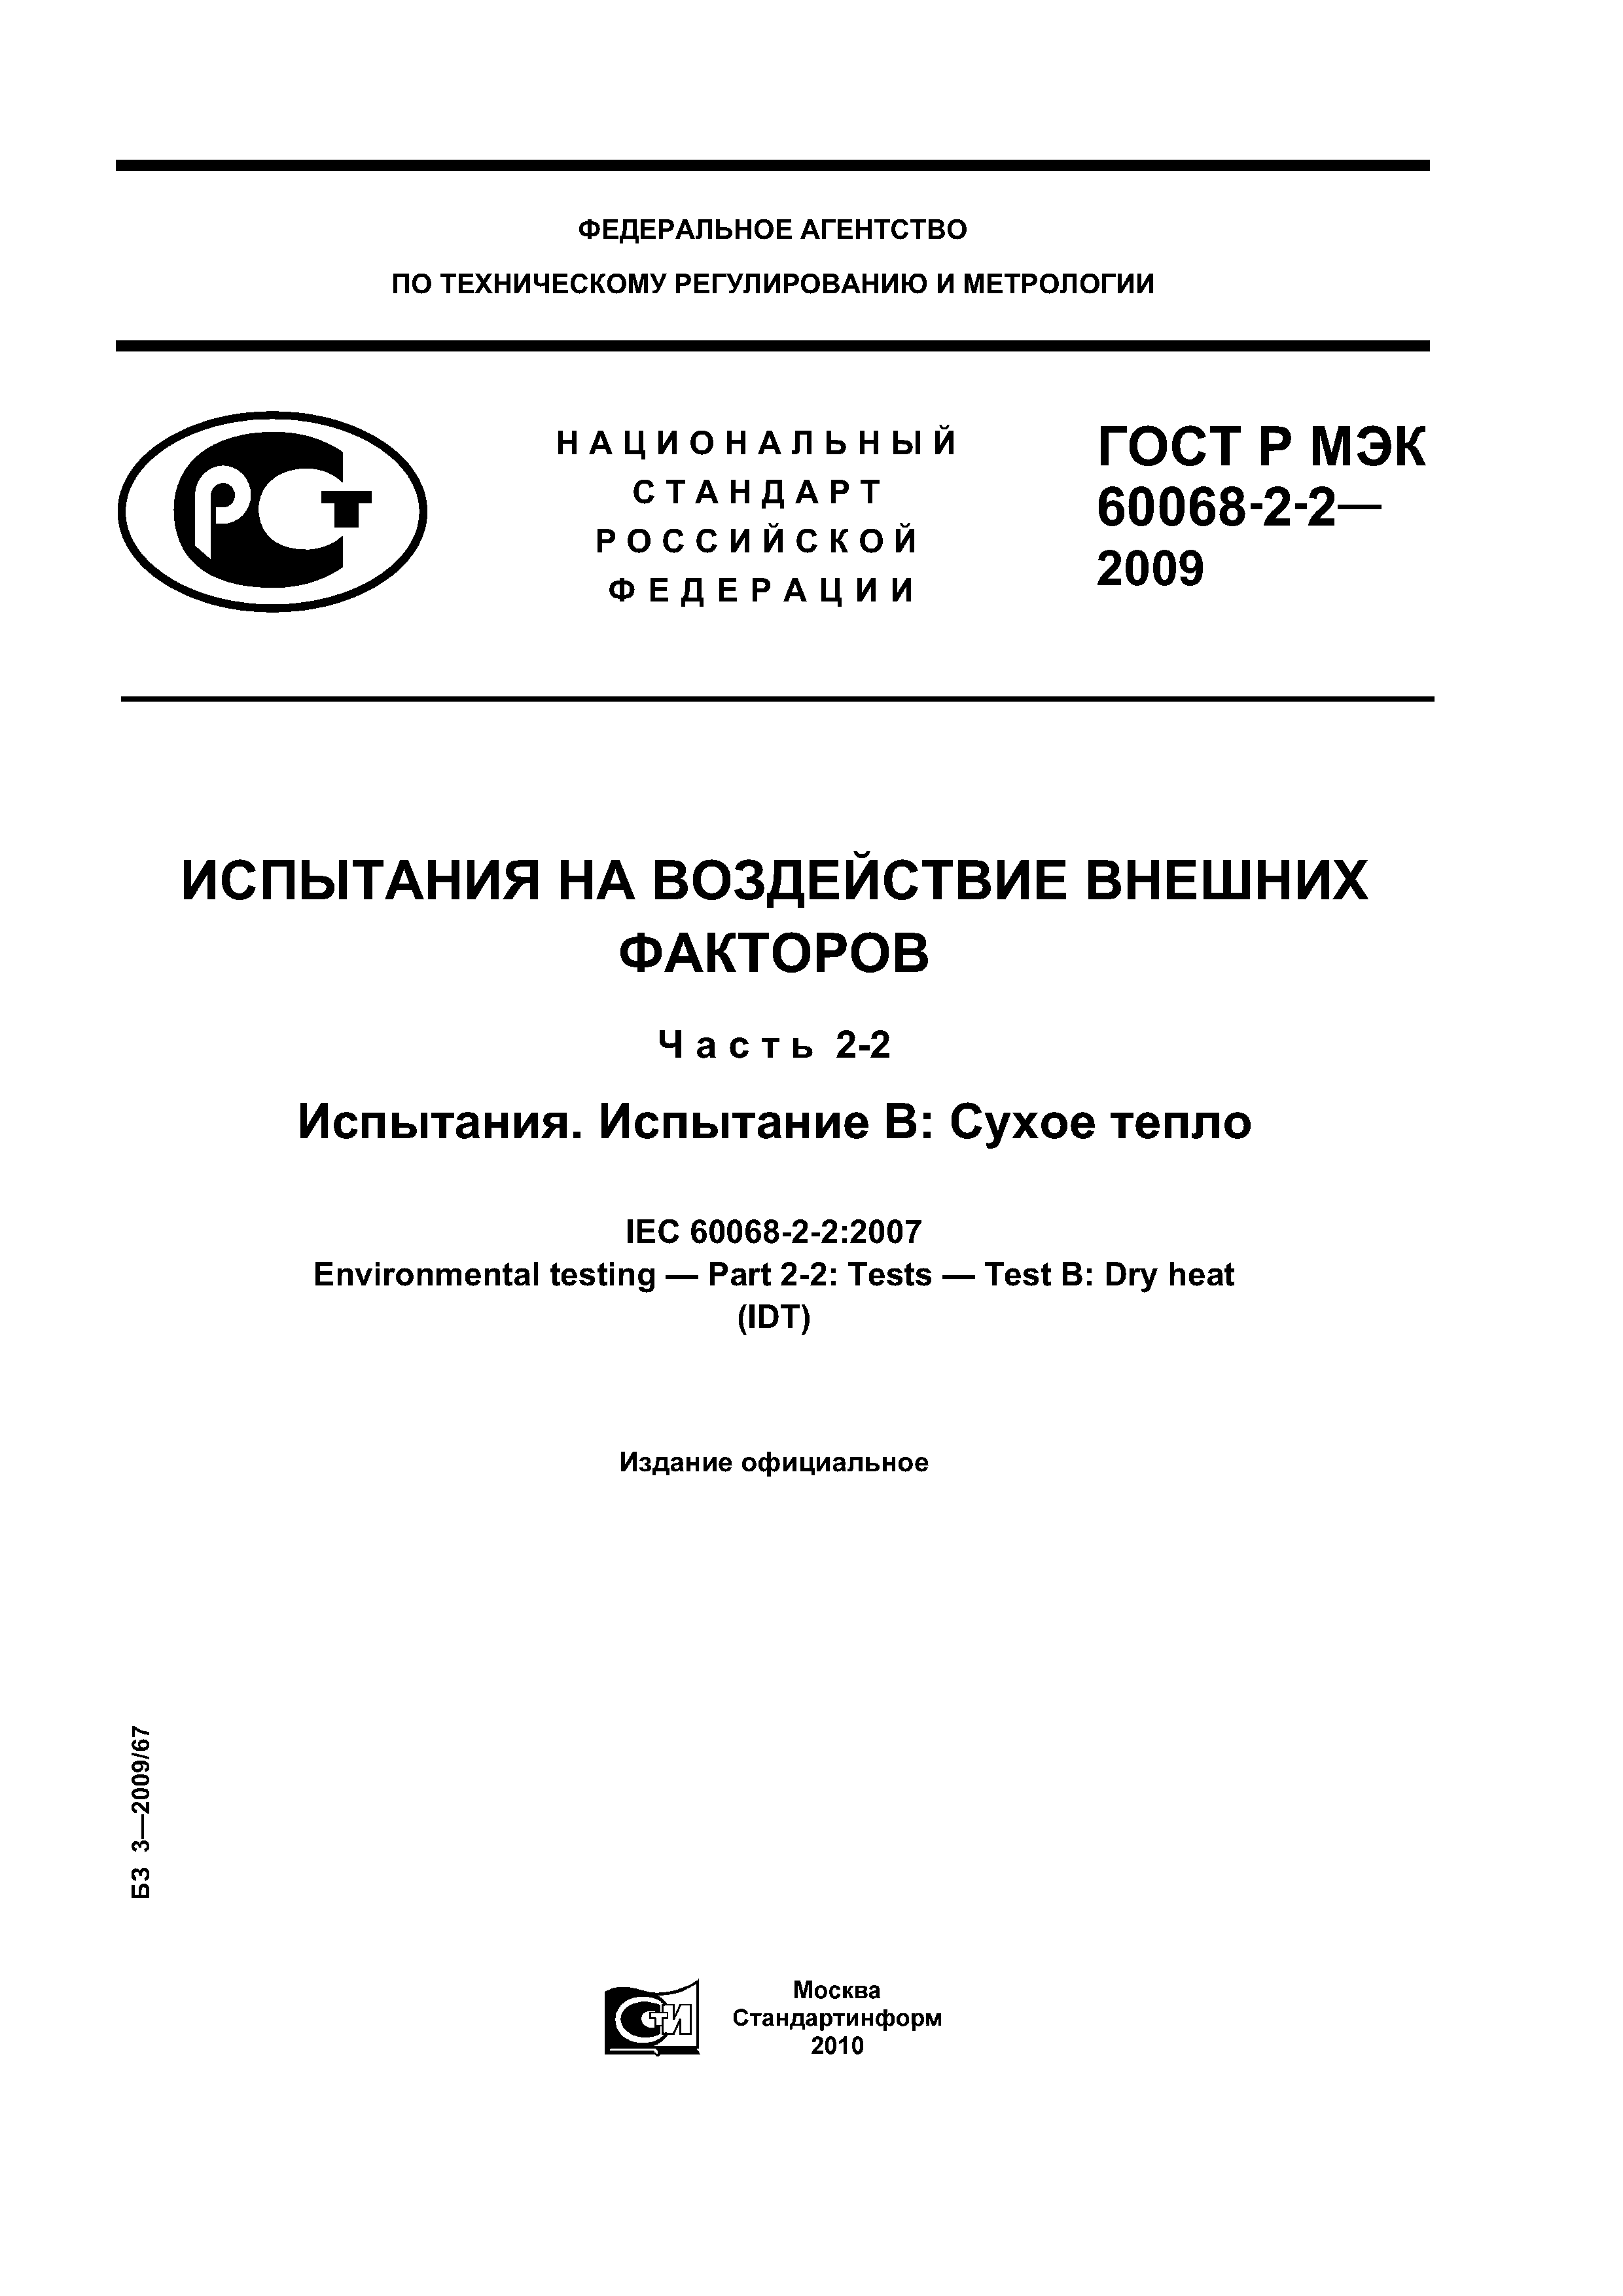 ГОСТ Р МЭК 60068-2-2-2009